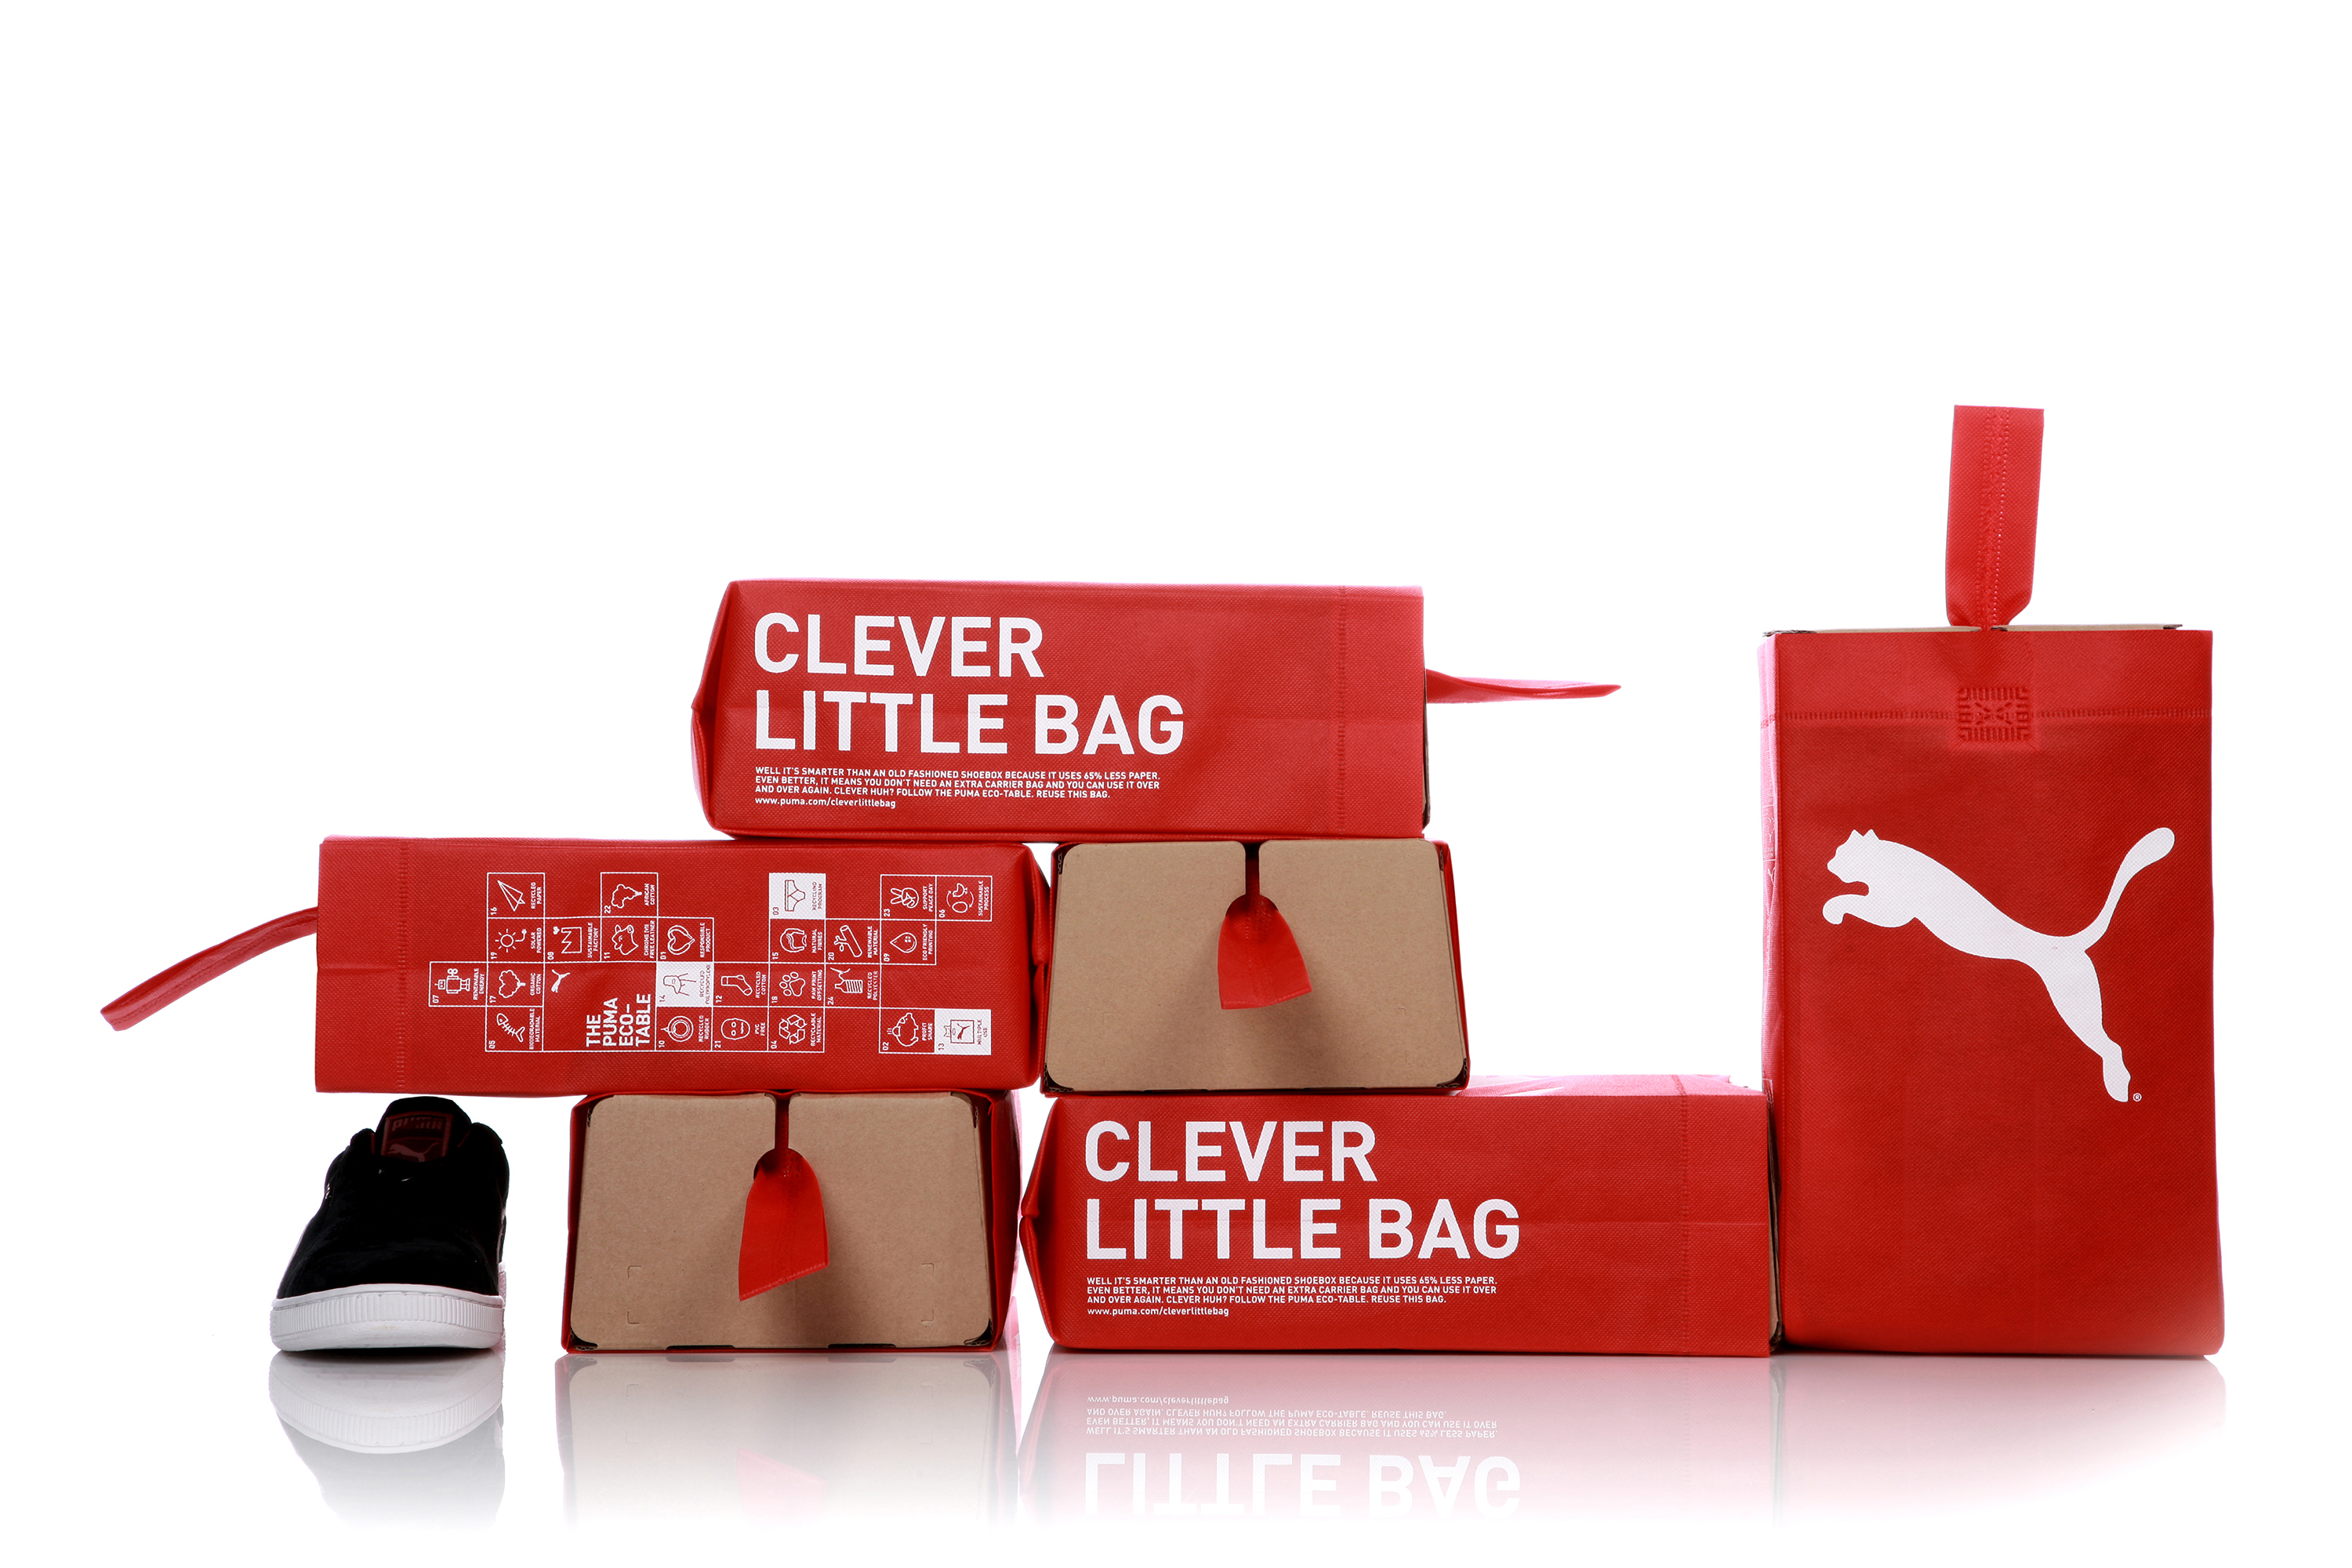 puma eco friendly packaging